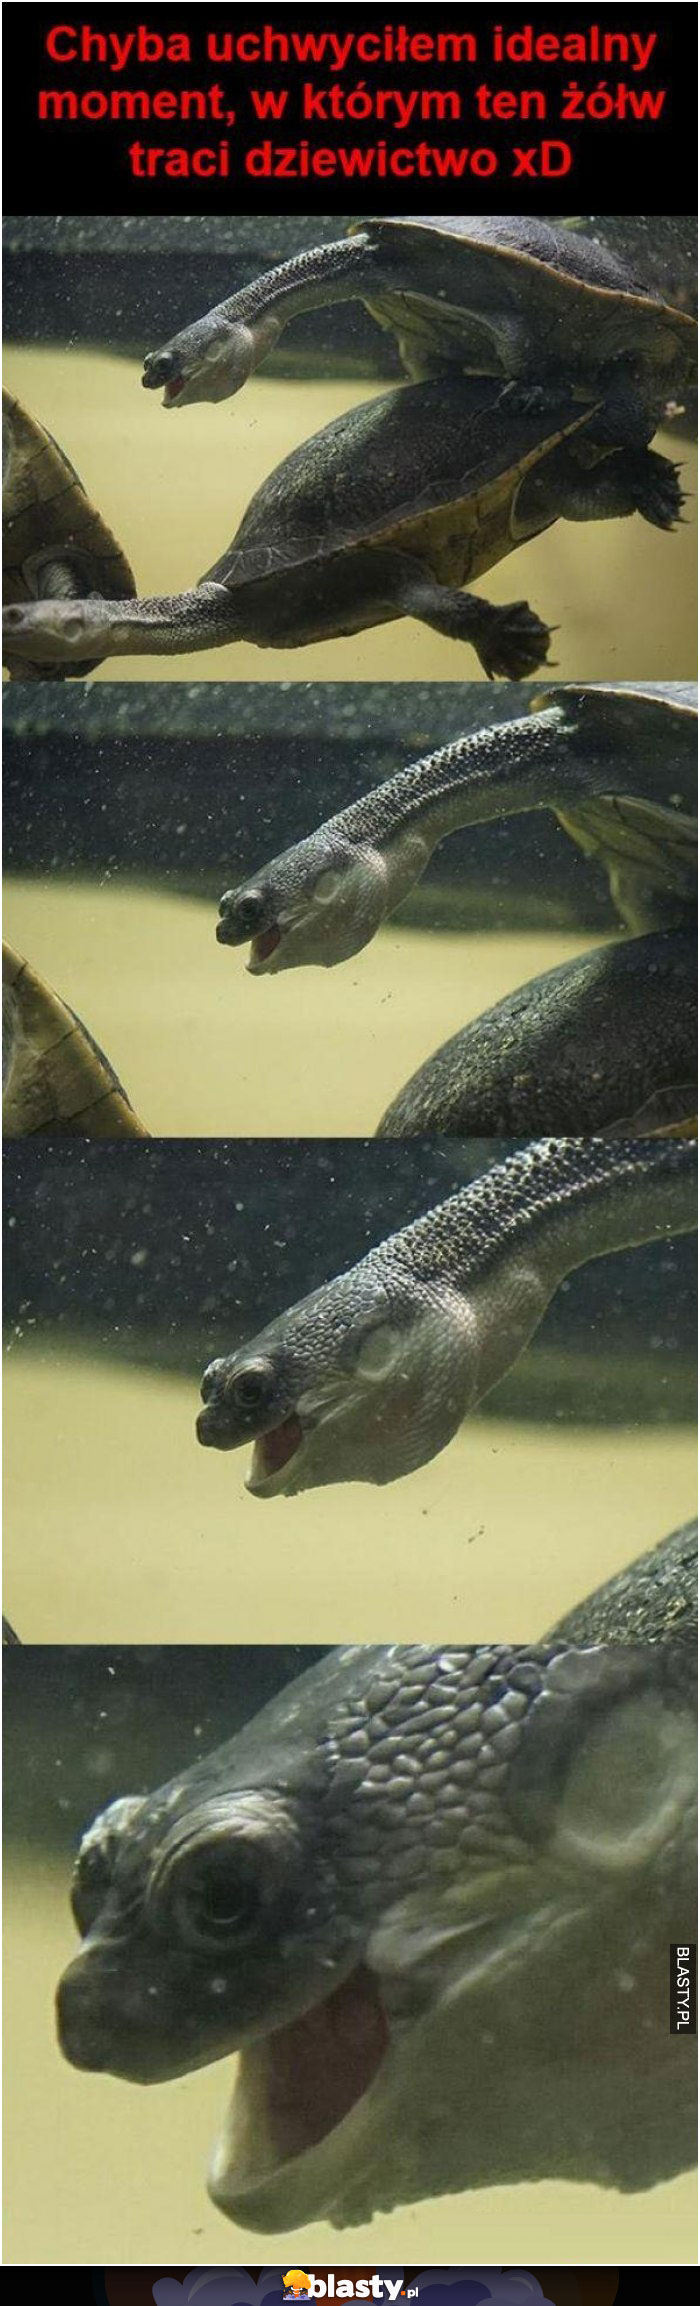 Żółw traci dziewictwo